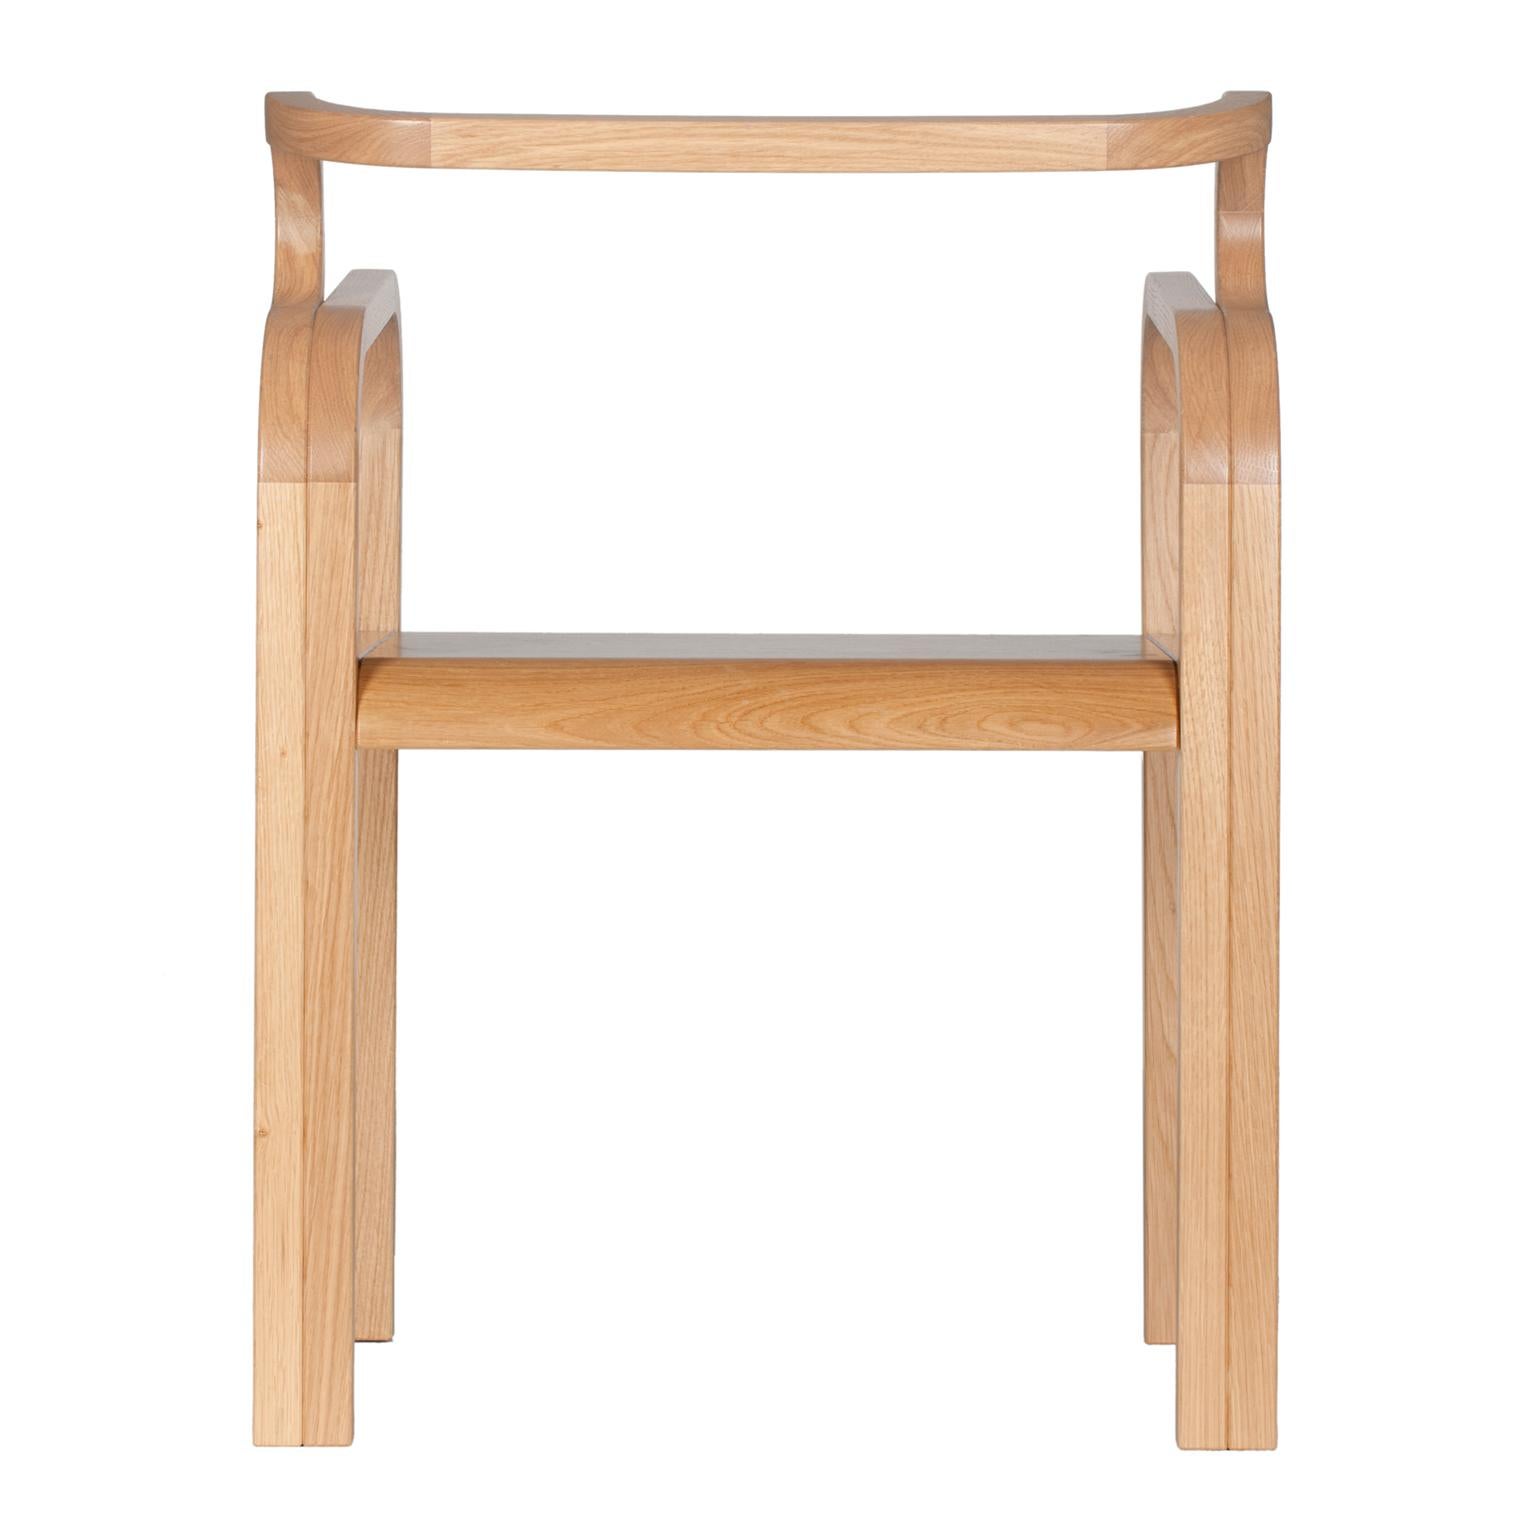 Odette-Stuhl aus Eiche von Fred und Juul
Abmessungen: T 51 x B 58 x H 75 cm.
MATERIALIEN: Eiche.

Erhältlich in verschiedenen Eichenholzausführungen. Kundenspezifische Größen, MATERIALIEN oder Ausführungen sind möglich. Bitte kontaktieren Sie